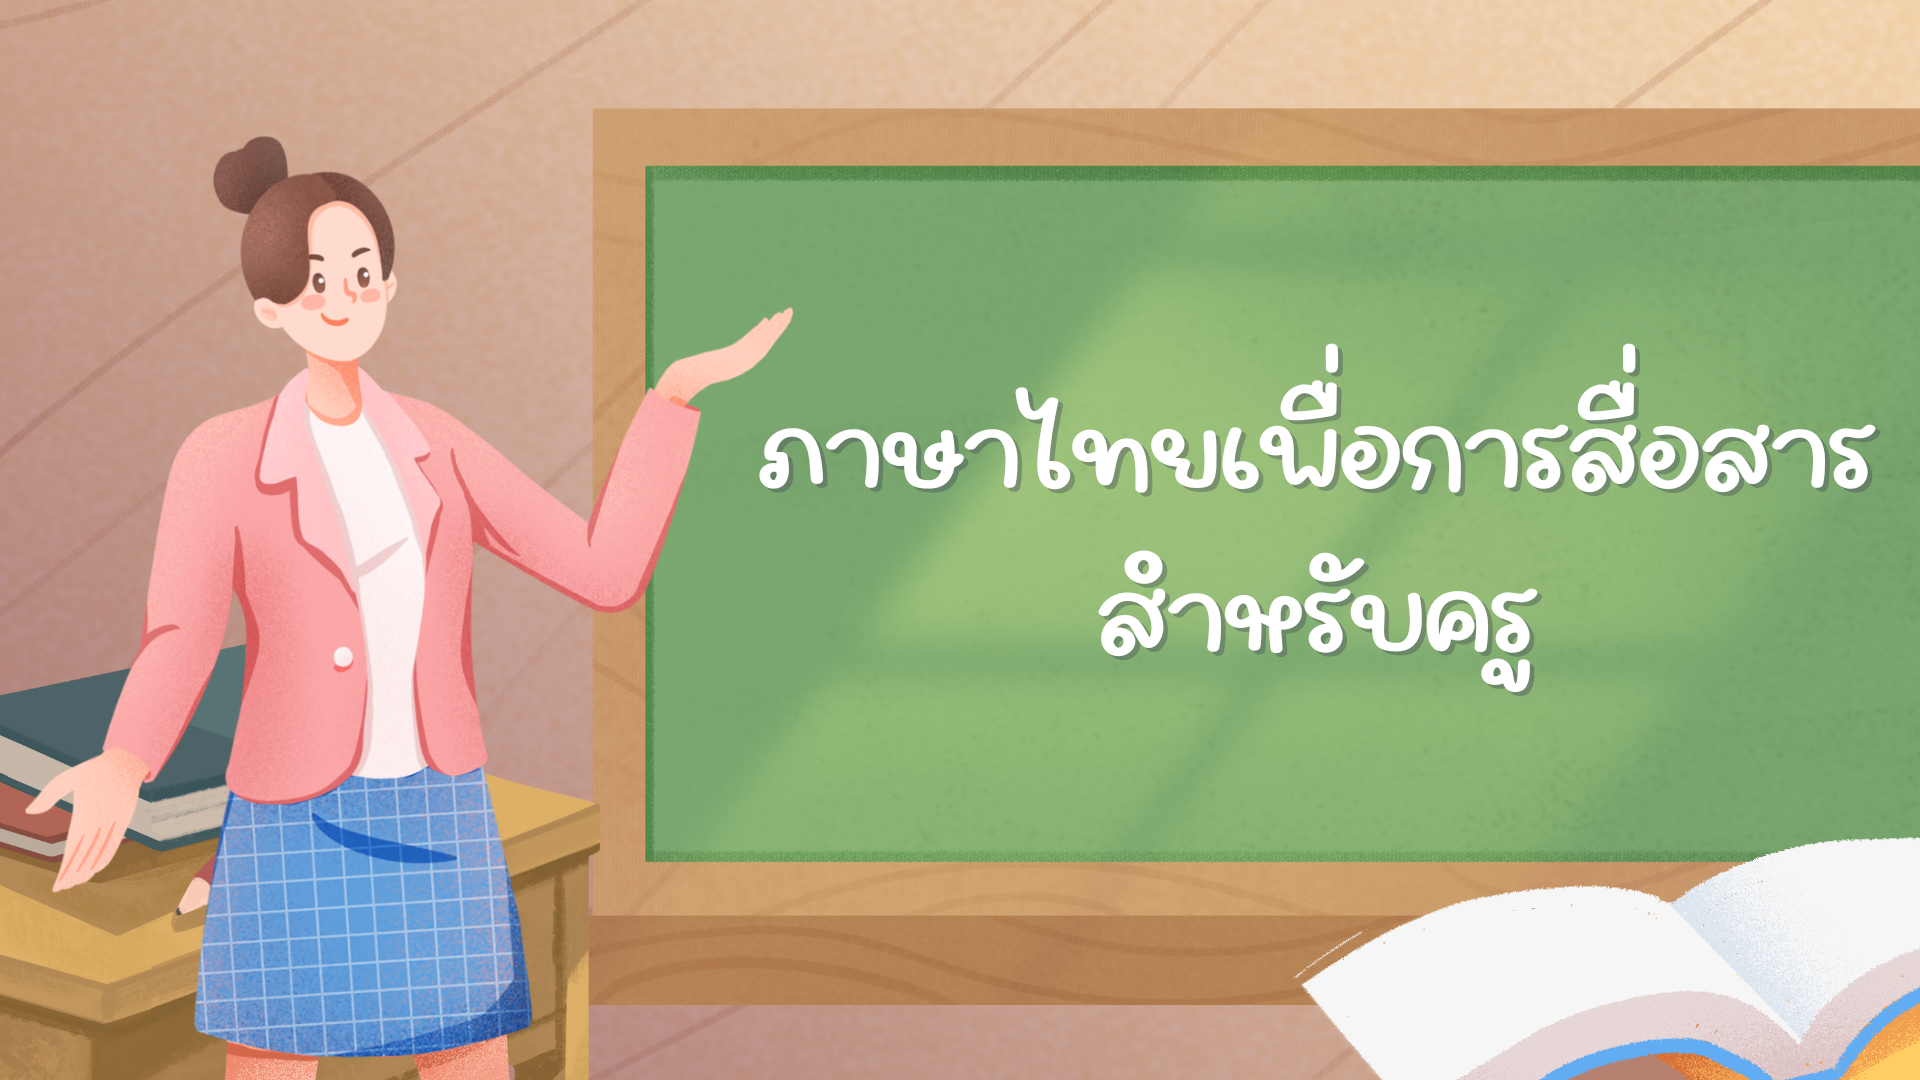 ภาษาไทยเพื่อการสื่อสารสำหรับครู  | Thai Language for Teacher Communication 020013228